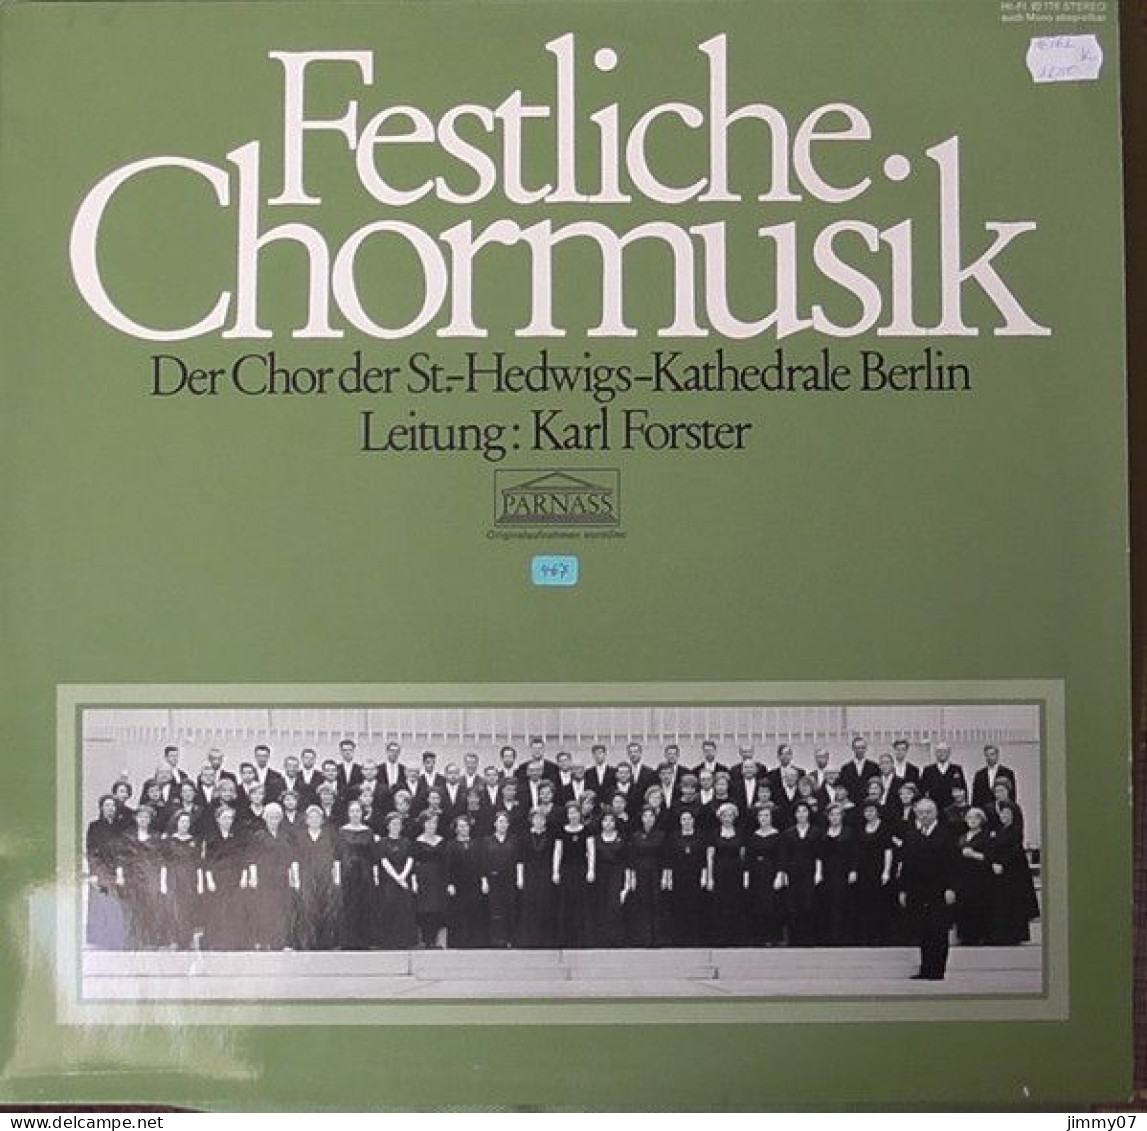 Chor Der St. Hedwigs-Kathedrale Berlin, Karl Forster - Festliche Chormusik (LP, Album) - Klassik